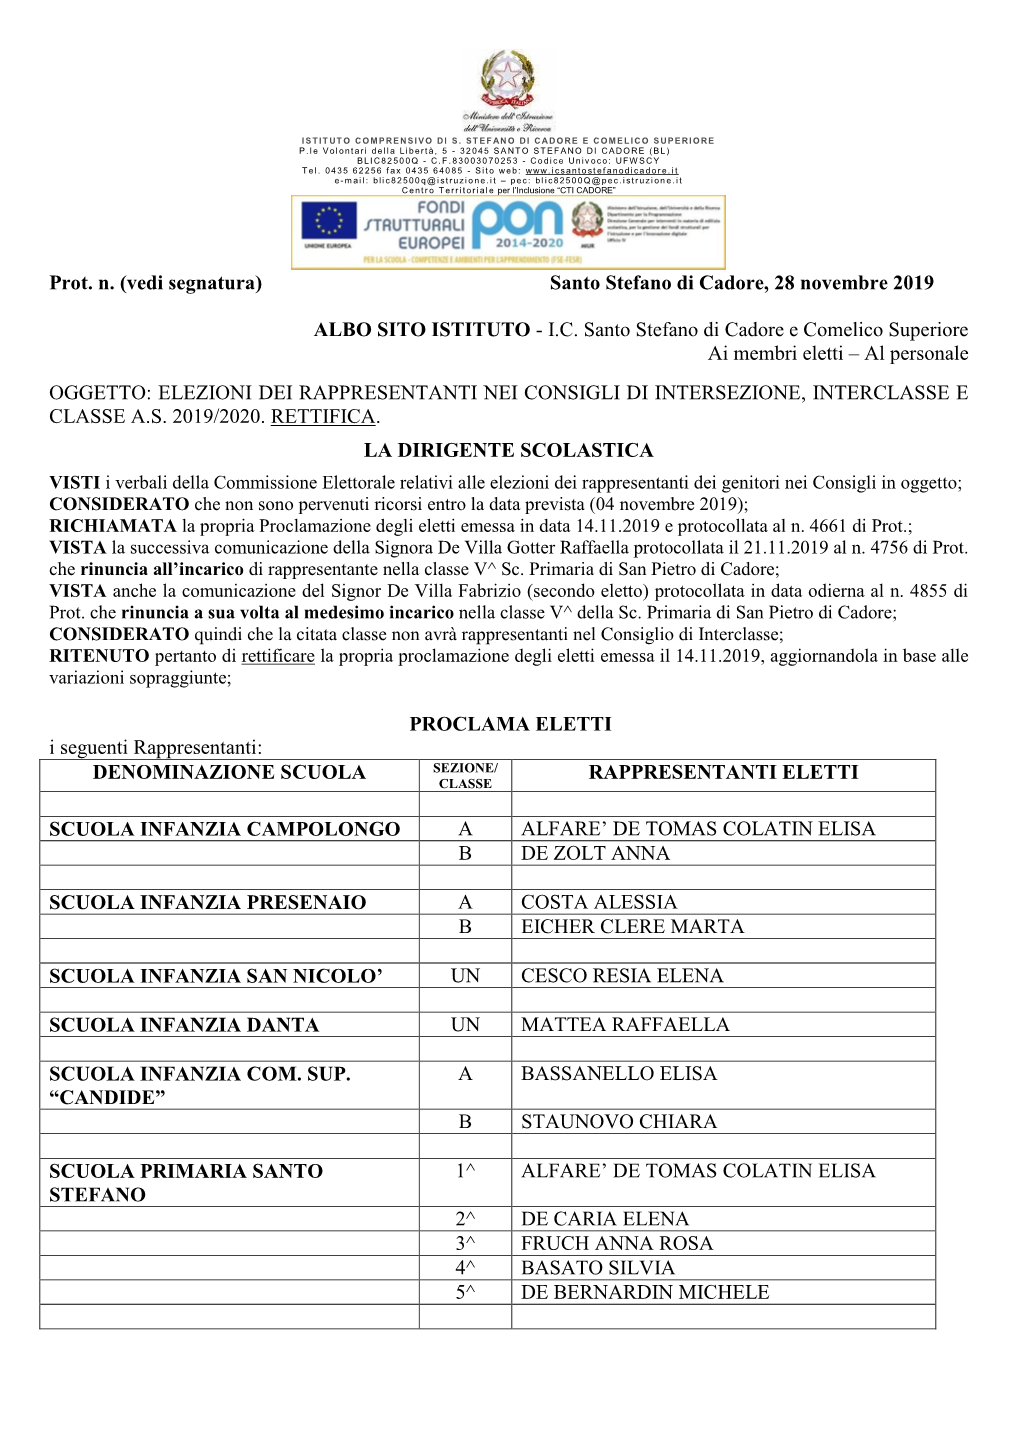 Proclamazione Degli Eletti Emessa in Data 14.11.2019 E Protocollata Al N